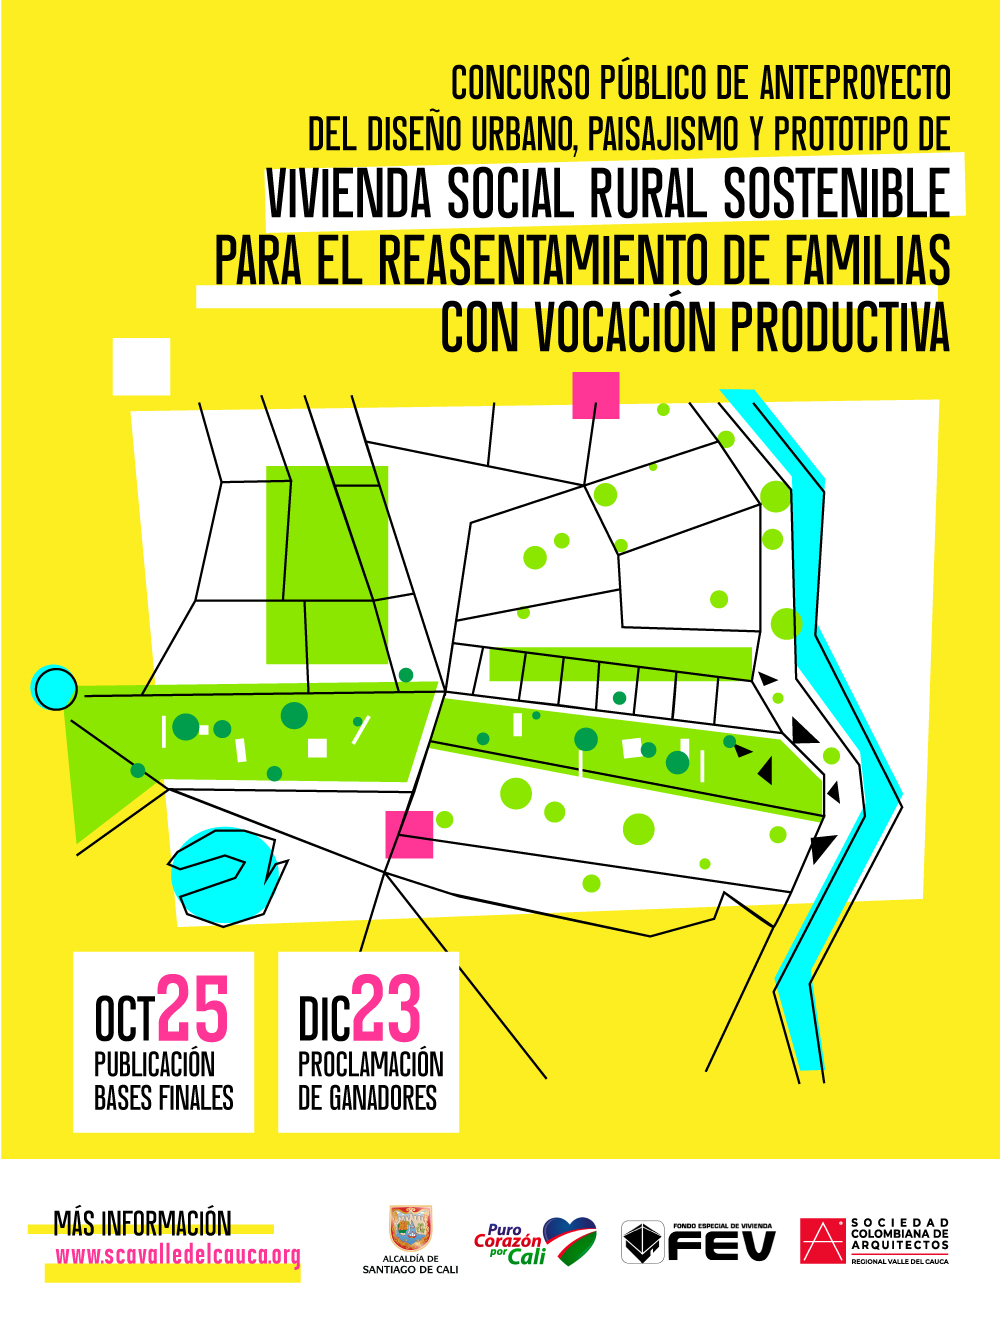 Concurso – Anteproyecto vivienda social rural sostenible